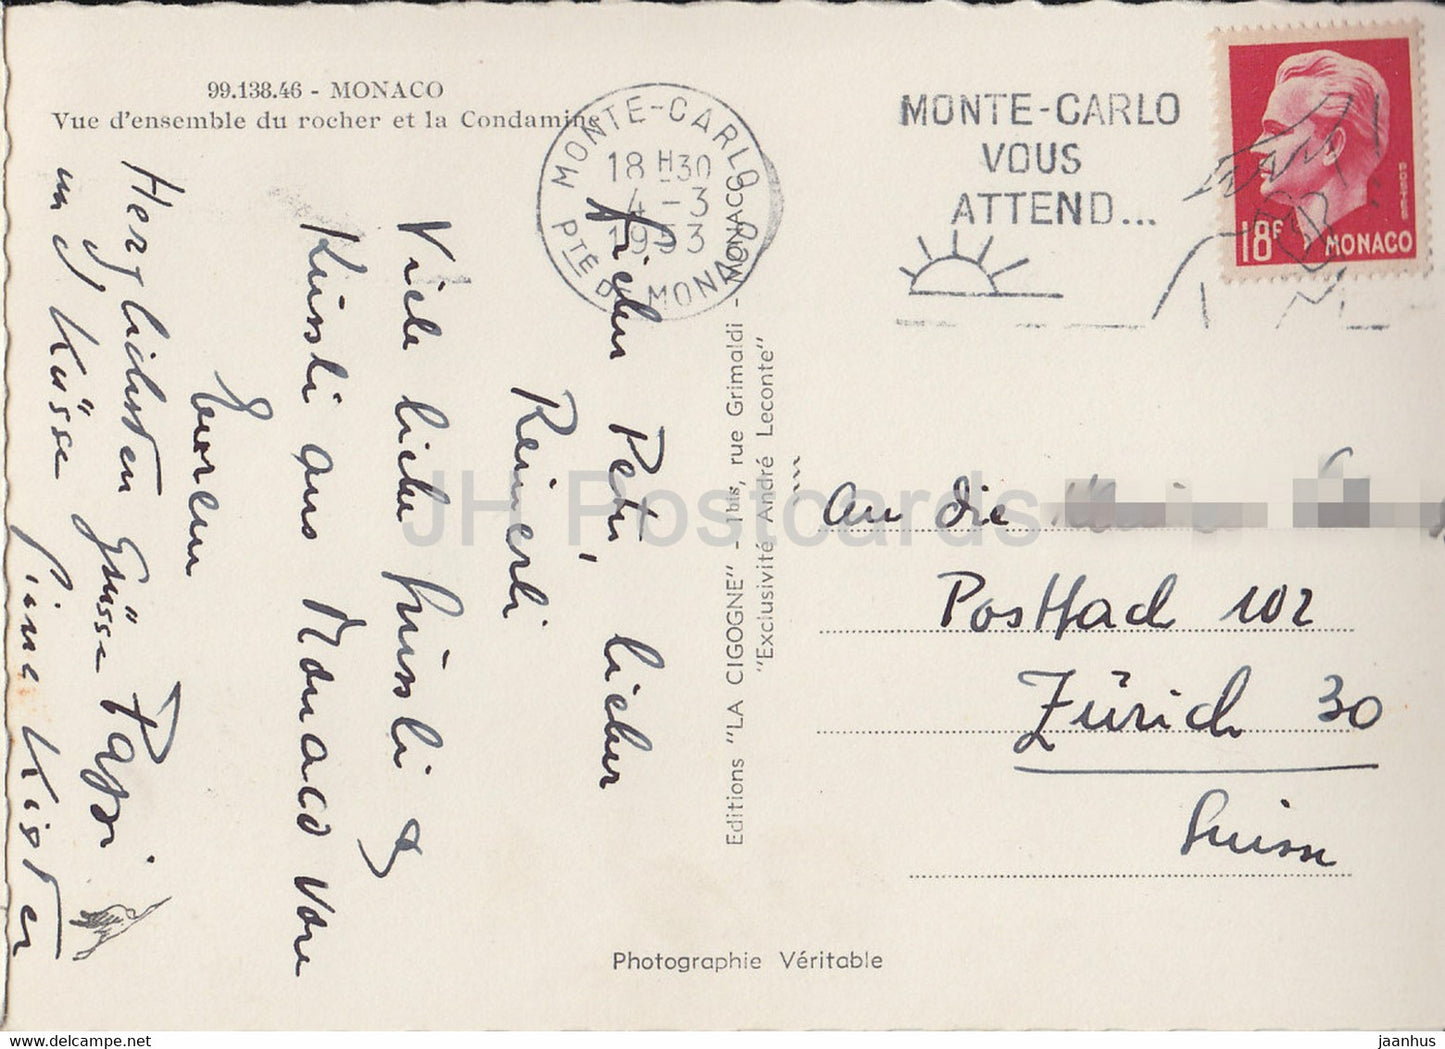 Vue d'ensemble du rocher et la Condamine - old postcard - 1953 - Monaco - used